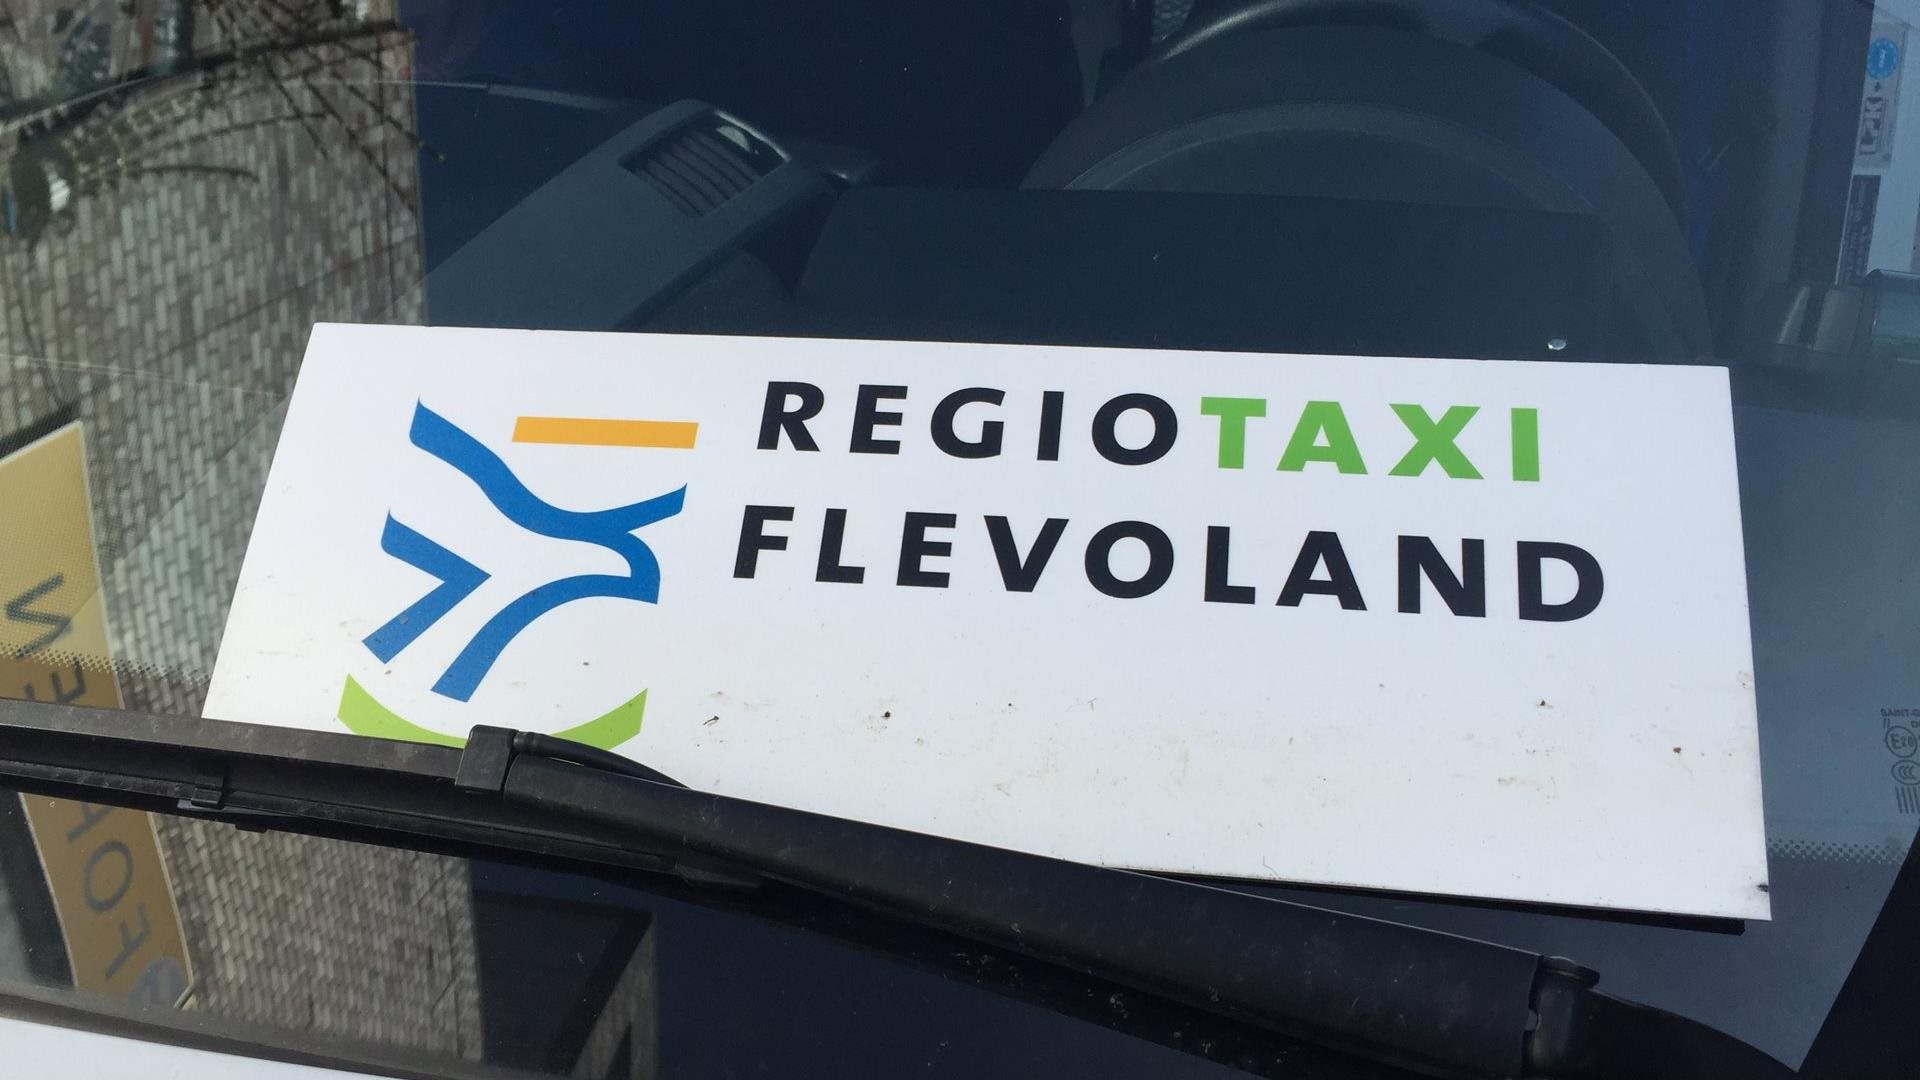 Bordje met Regiotaxi Flevoland erop